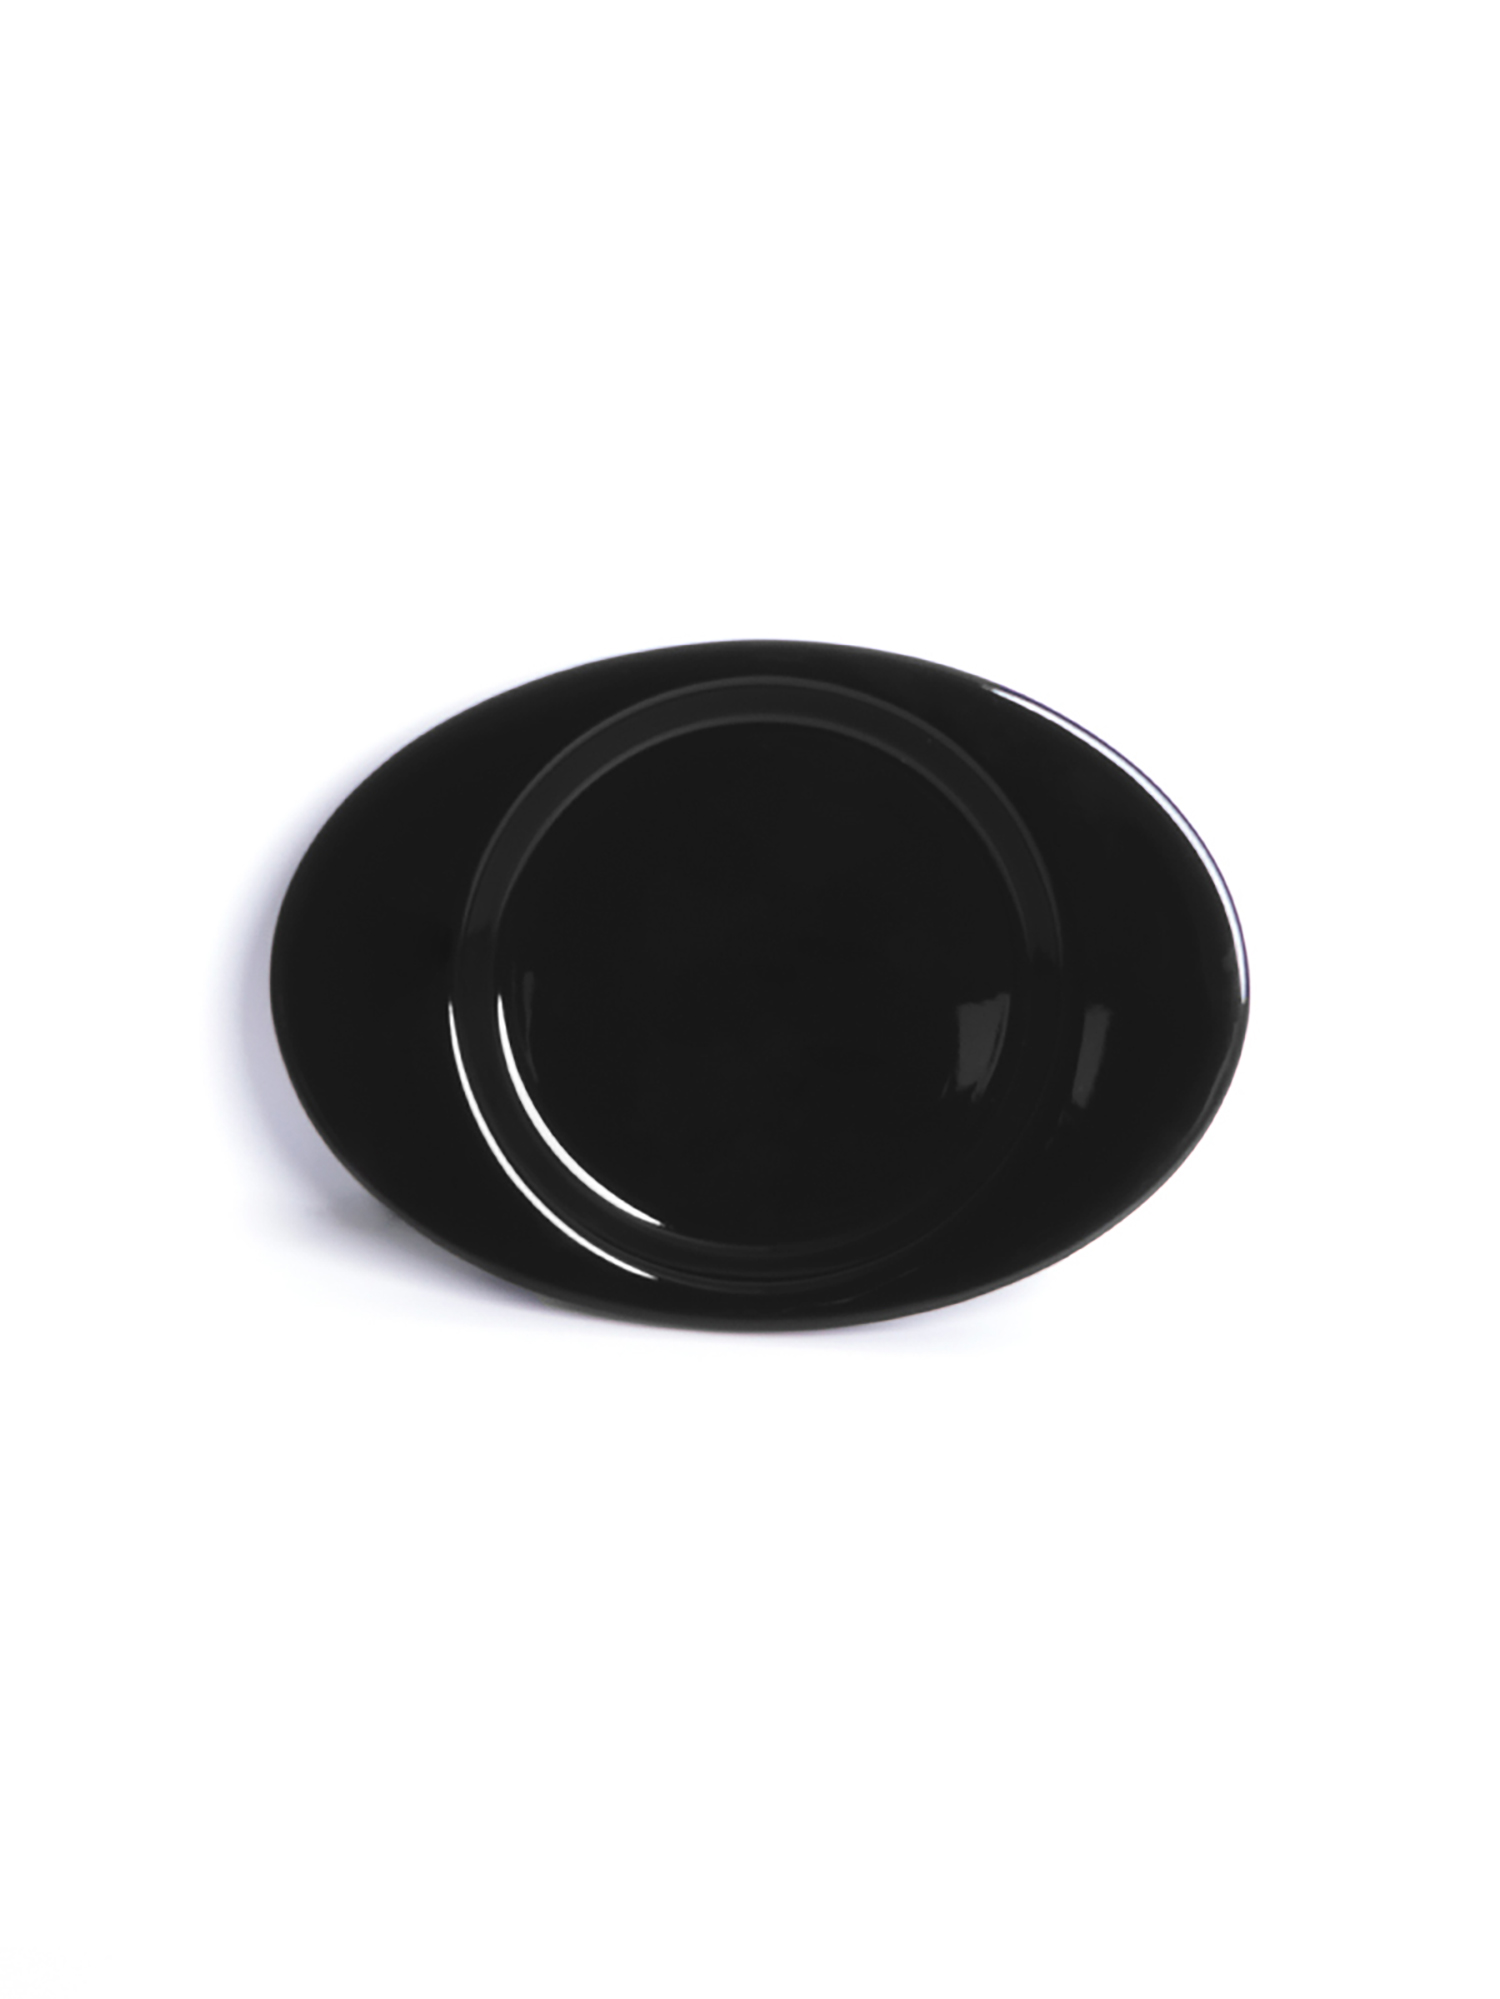 YEP Signature Plate - Black